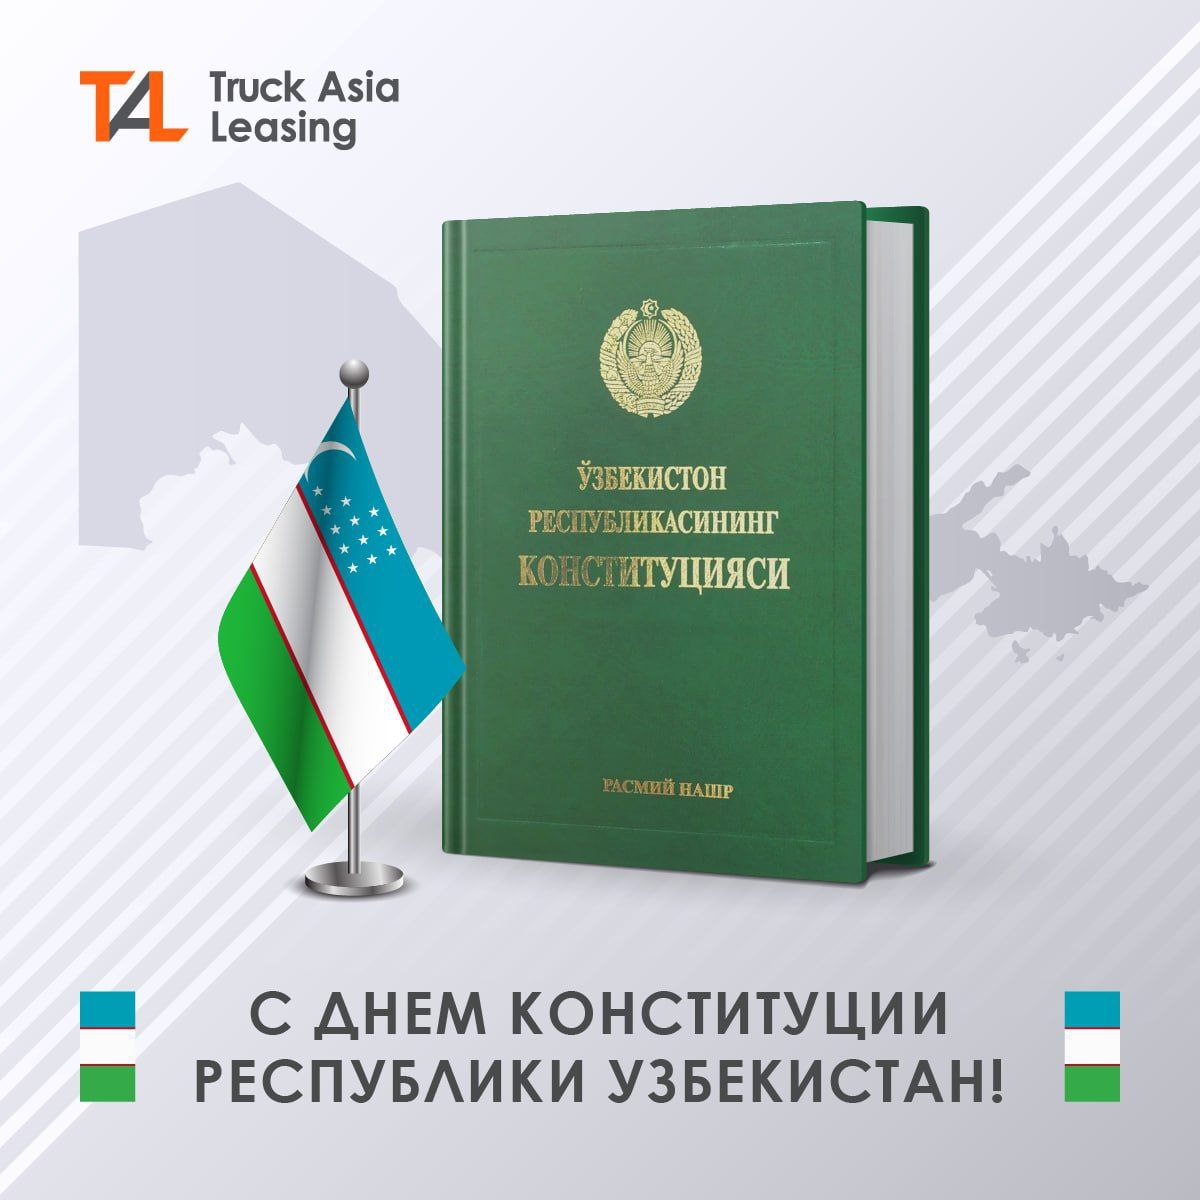 Поздравляем всех с Днем Конституции Узбекистана!